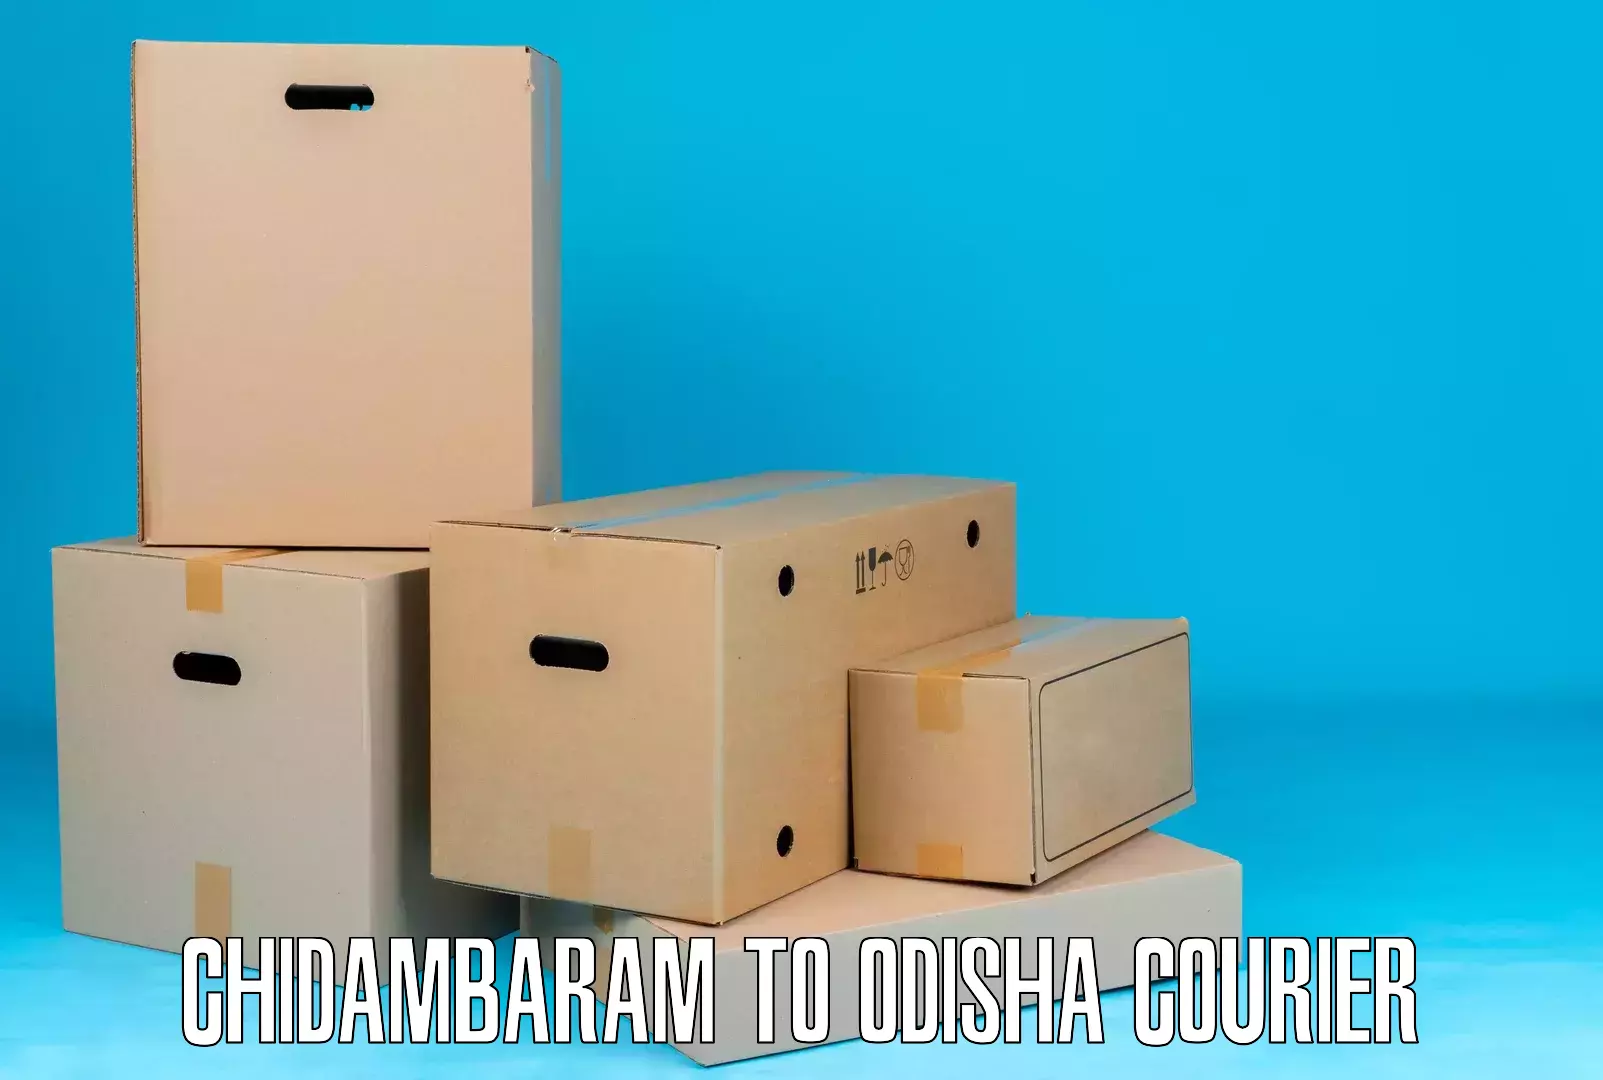 Express logistics providers Chidambaram to Gunupur